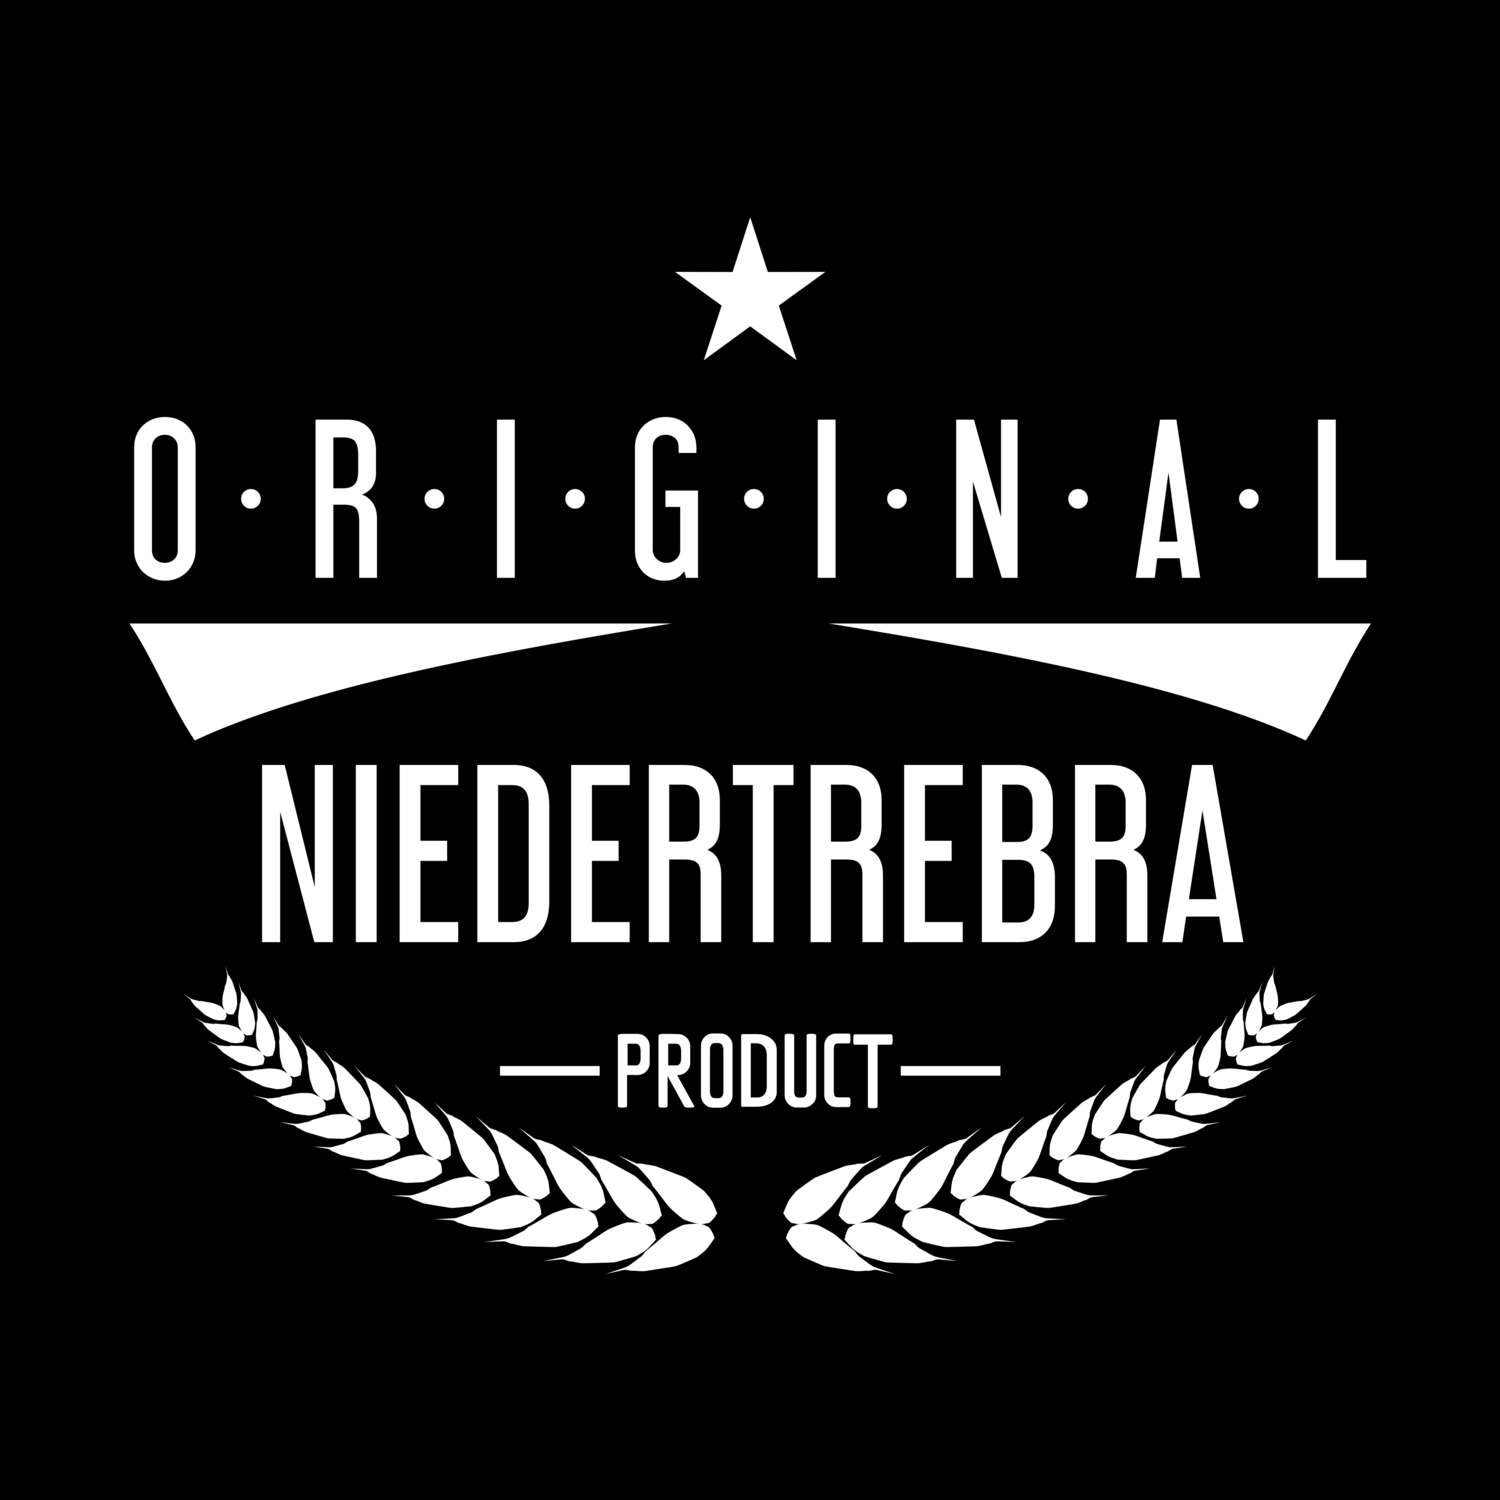 Niedertrebra T-Shirt »Original Product«